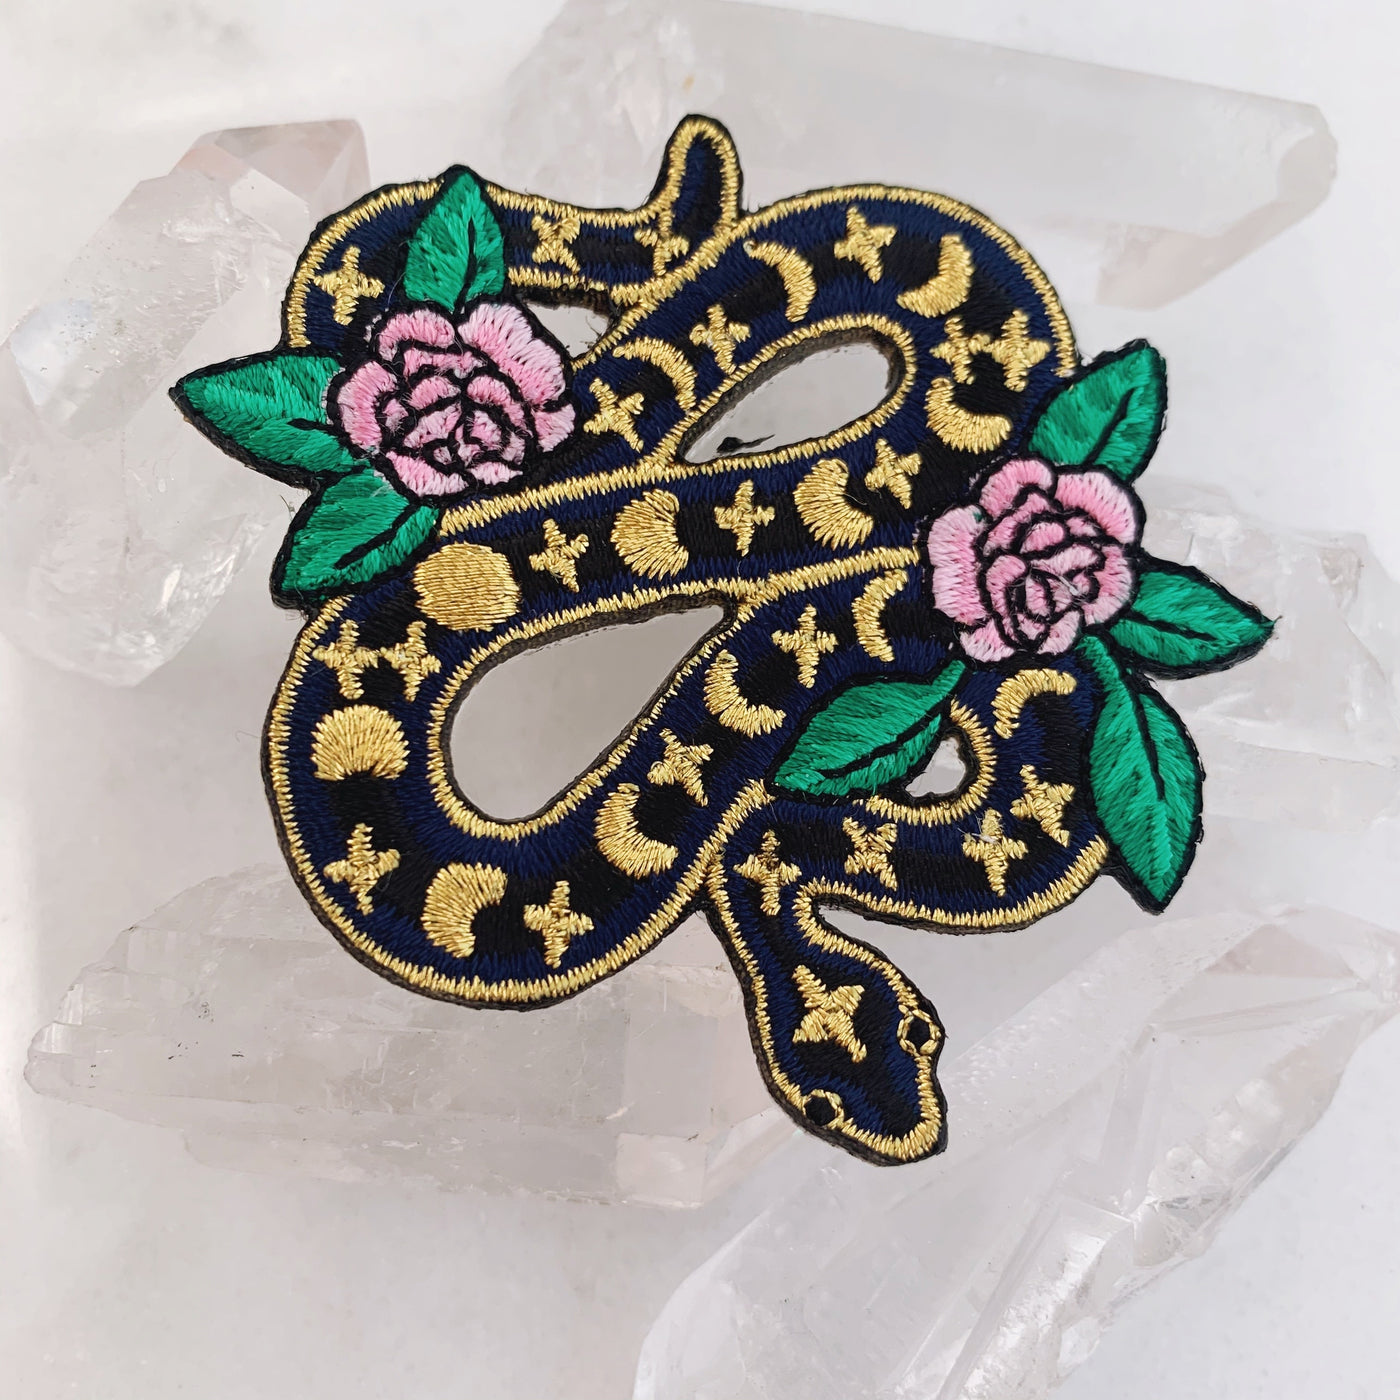 Serpent & Flower Iron-On Patch – Sipsey Wilder